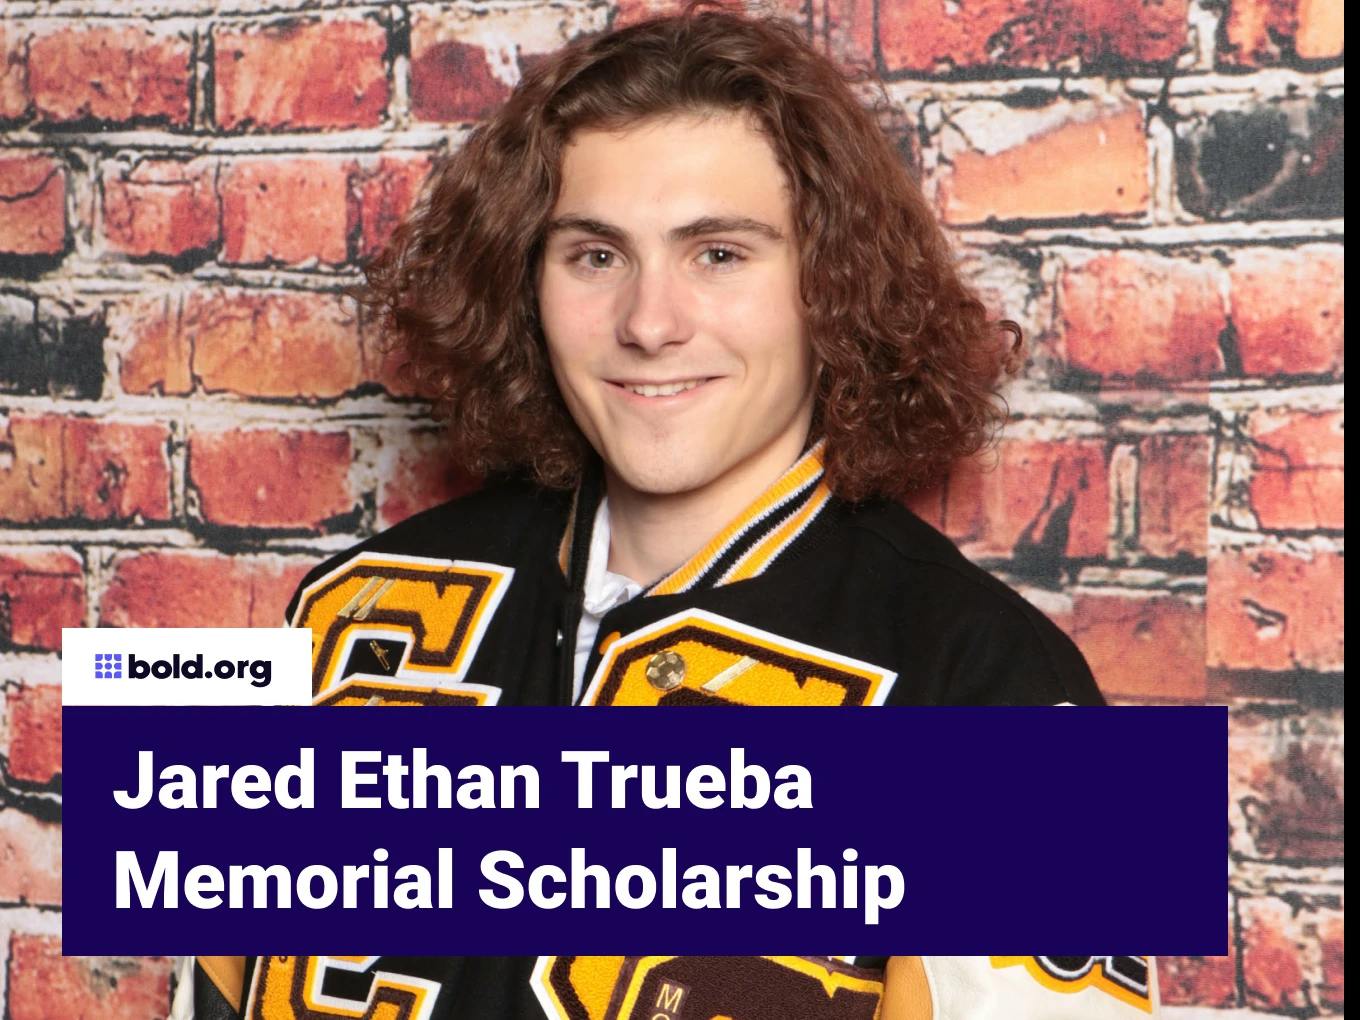 Jared Ethan Trueba Memorial Scholarship